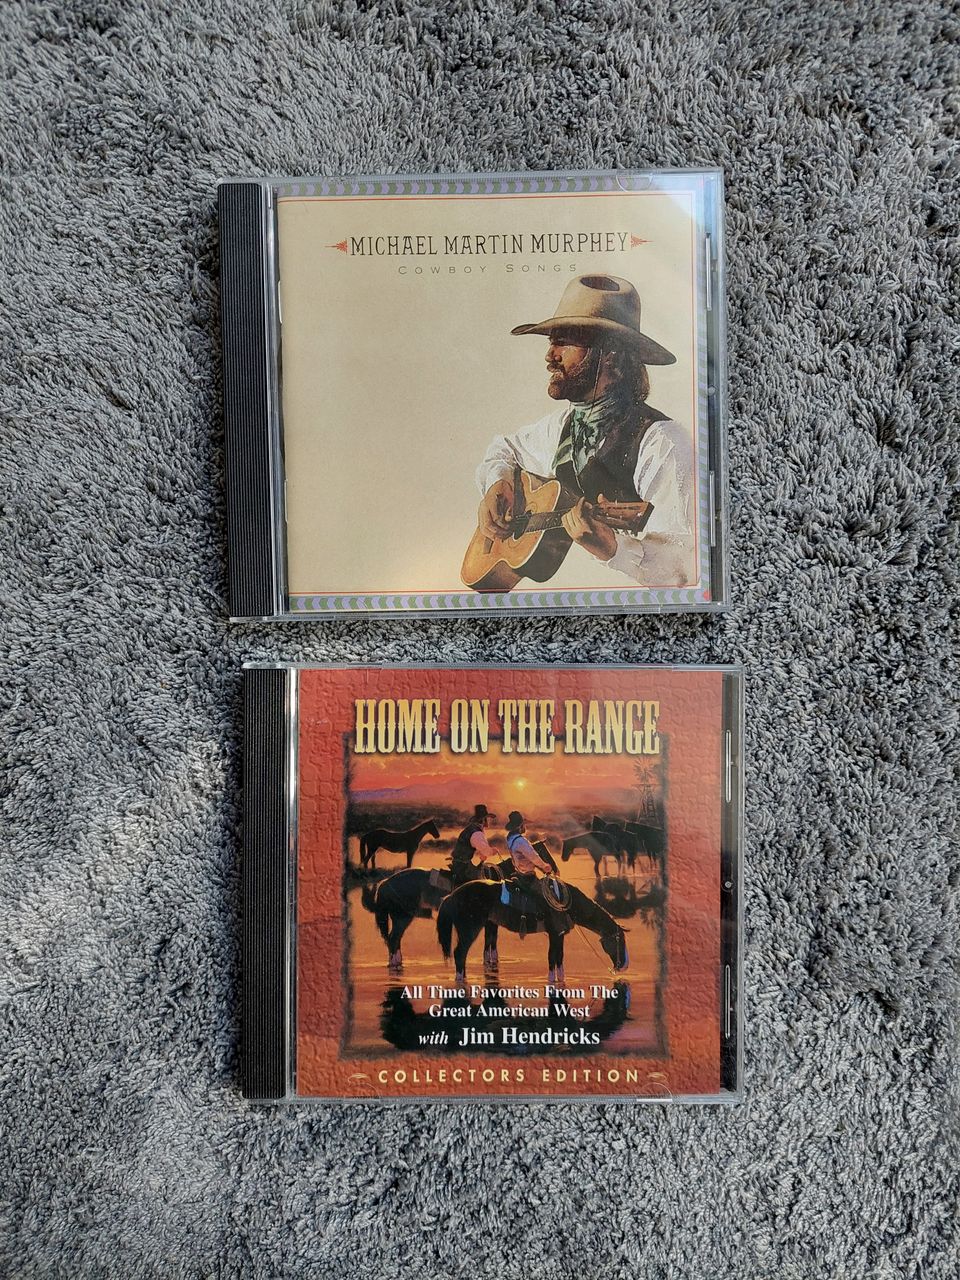 Cowboy-cd:t 2 kpl